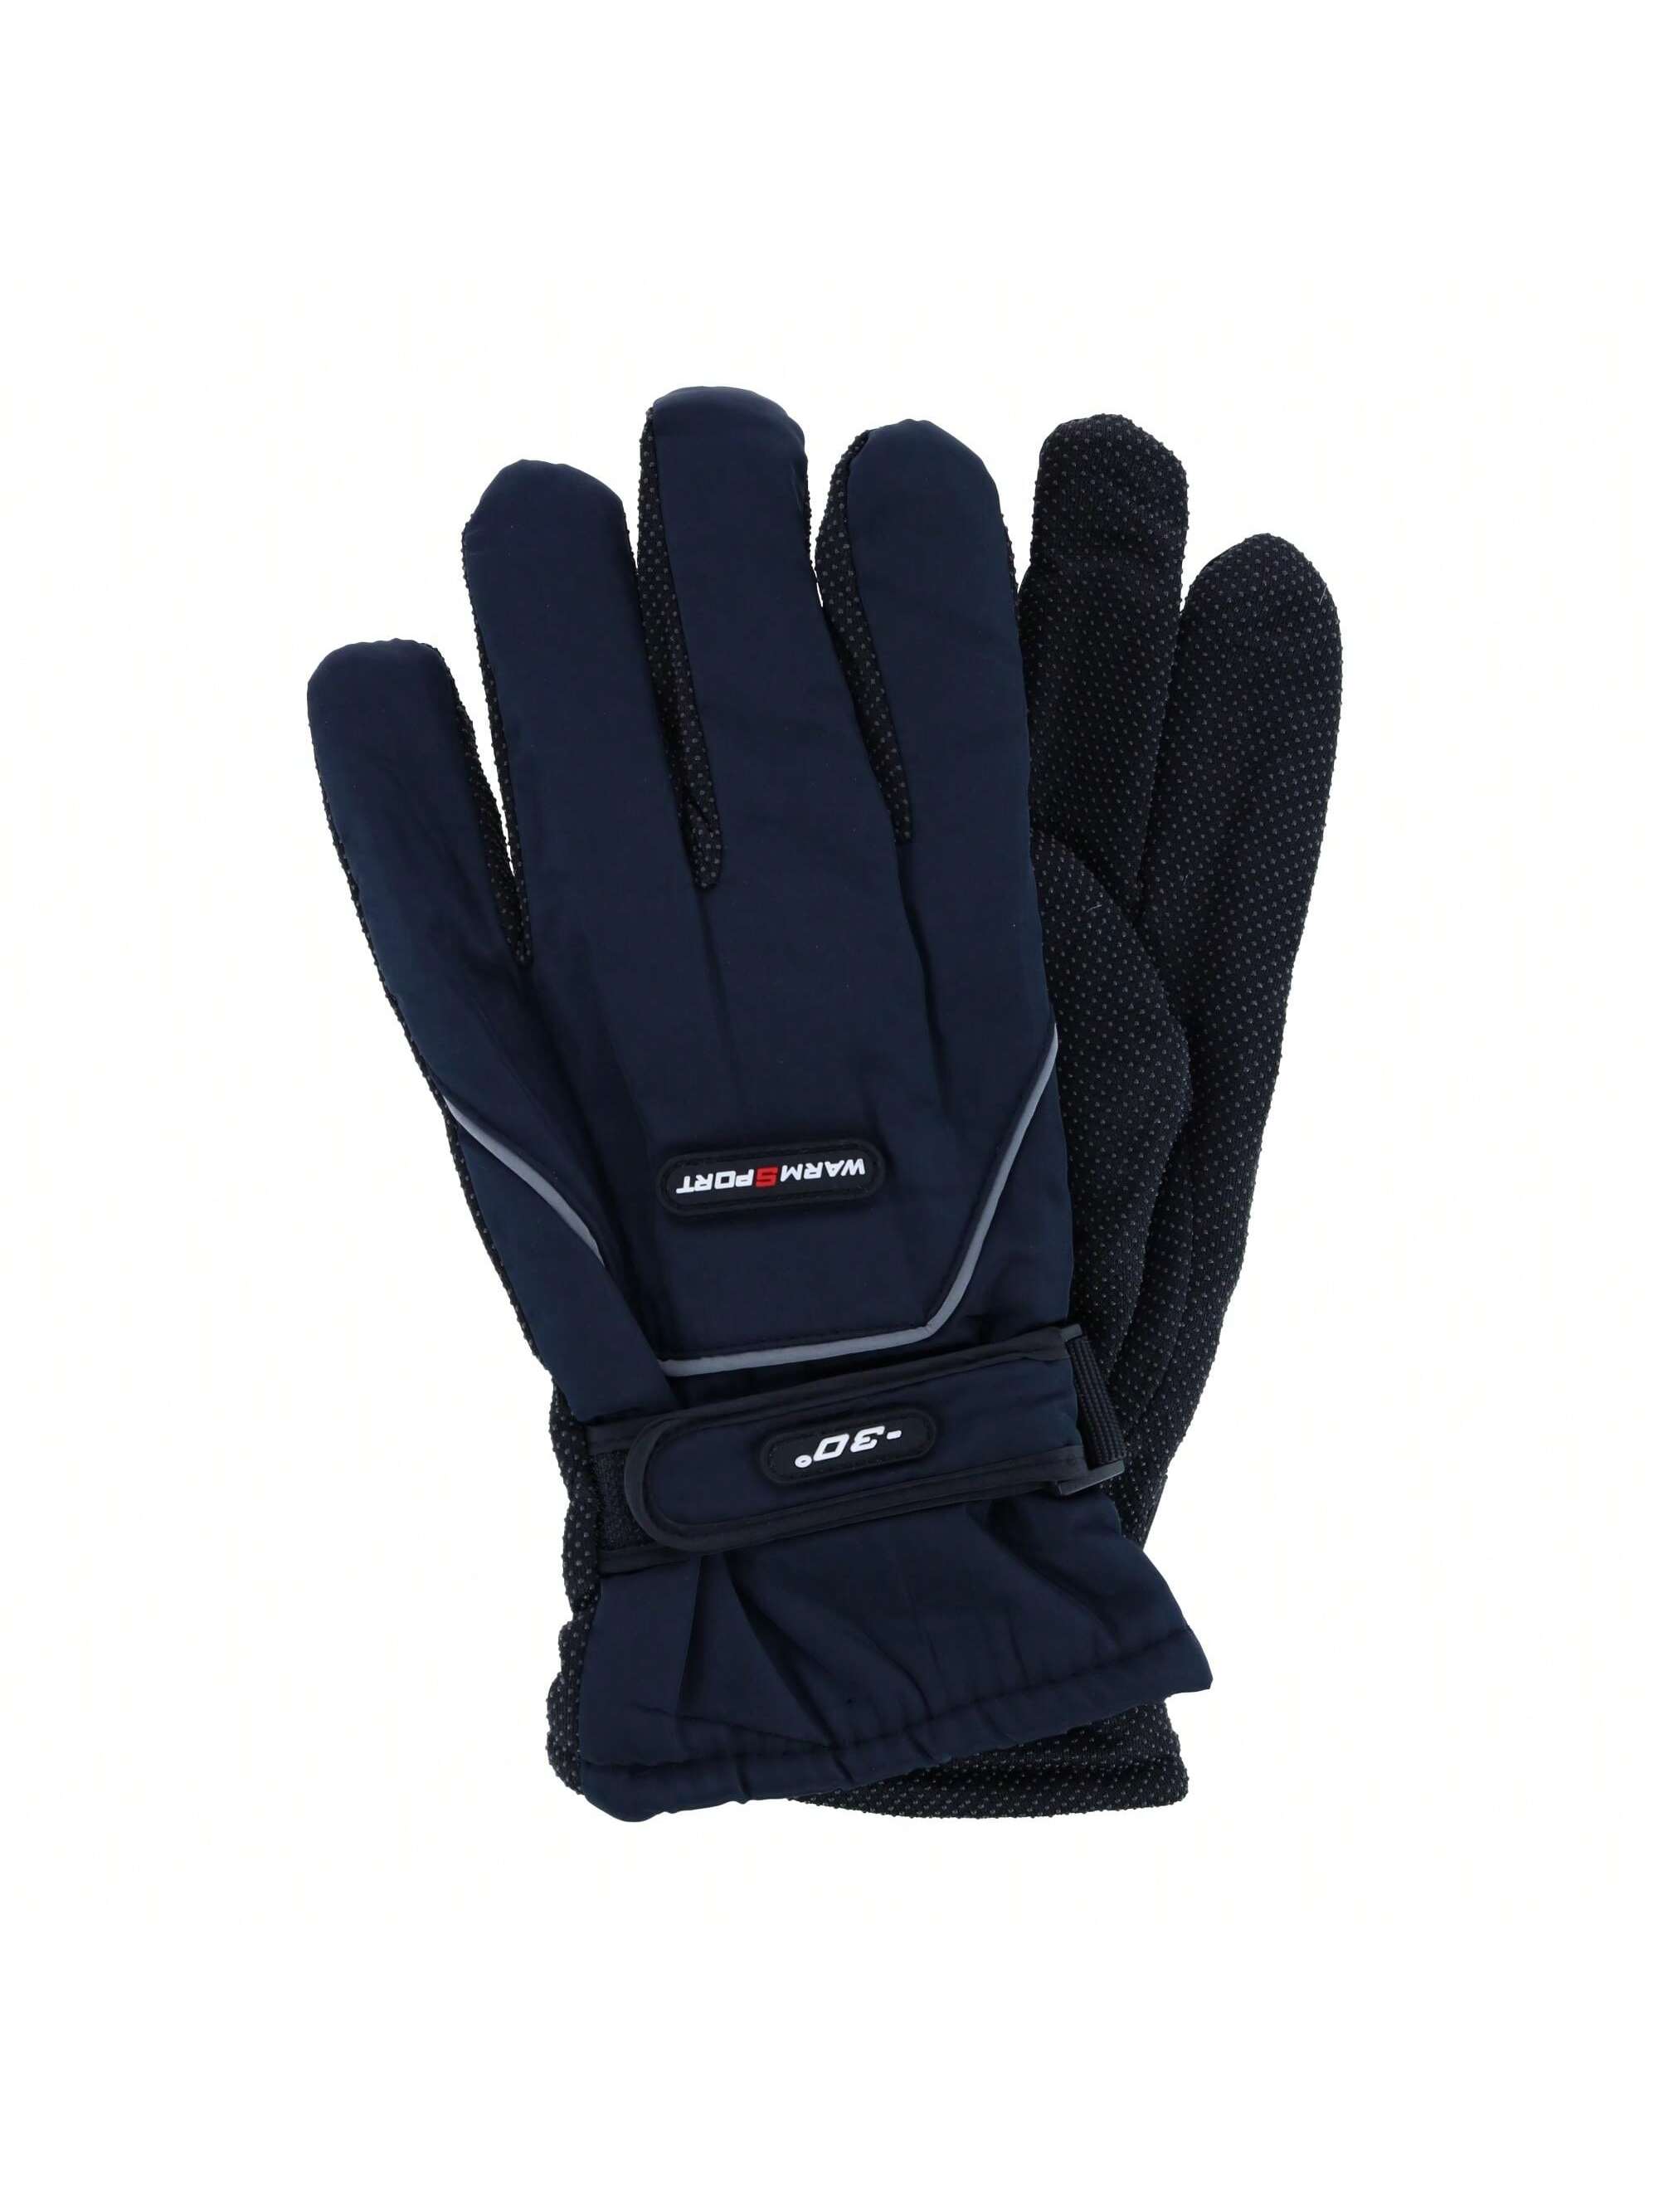 цена Мужские зимние лыжные перчатки CTM из микрофибры одного размера с ремешком на запястье, темно-синий